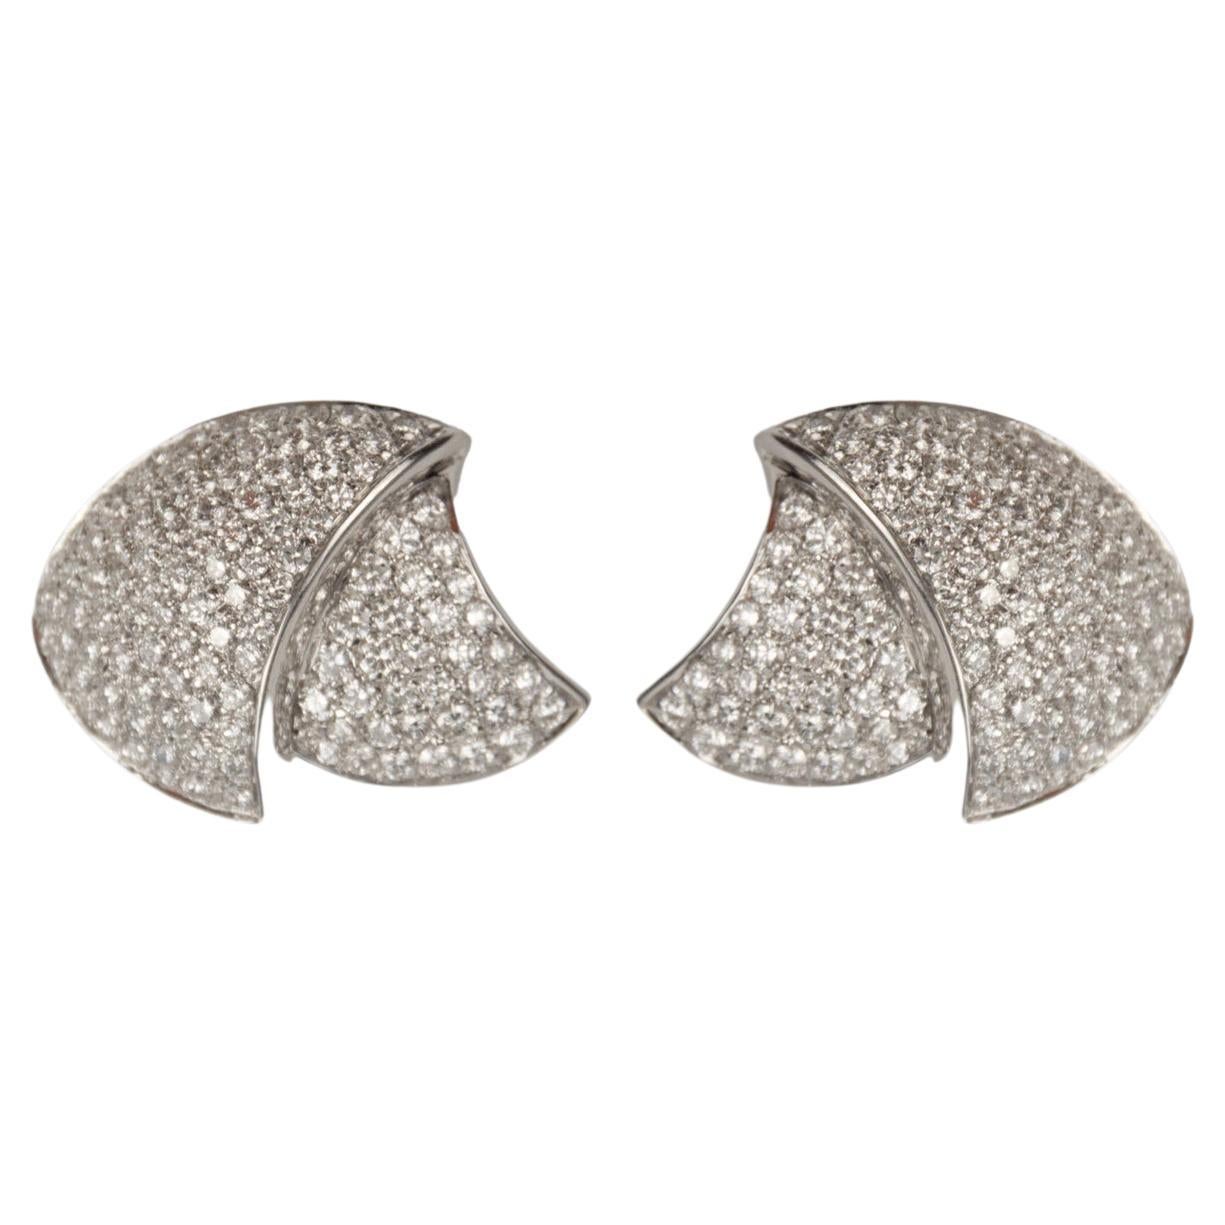 Stefan Hafner 18k White Gold 4.94ctw Diamond Earrings